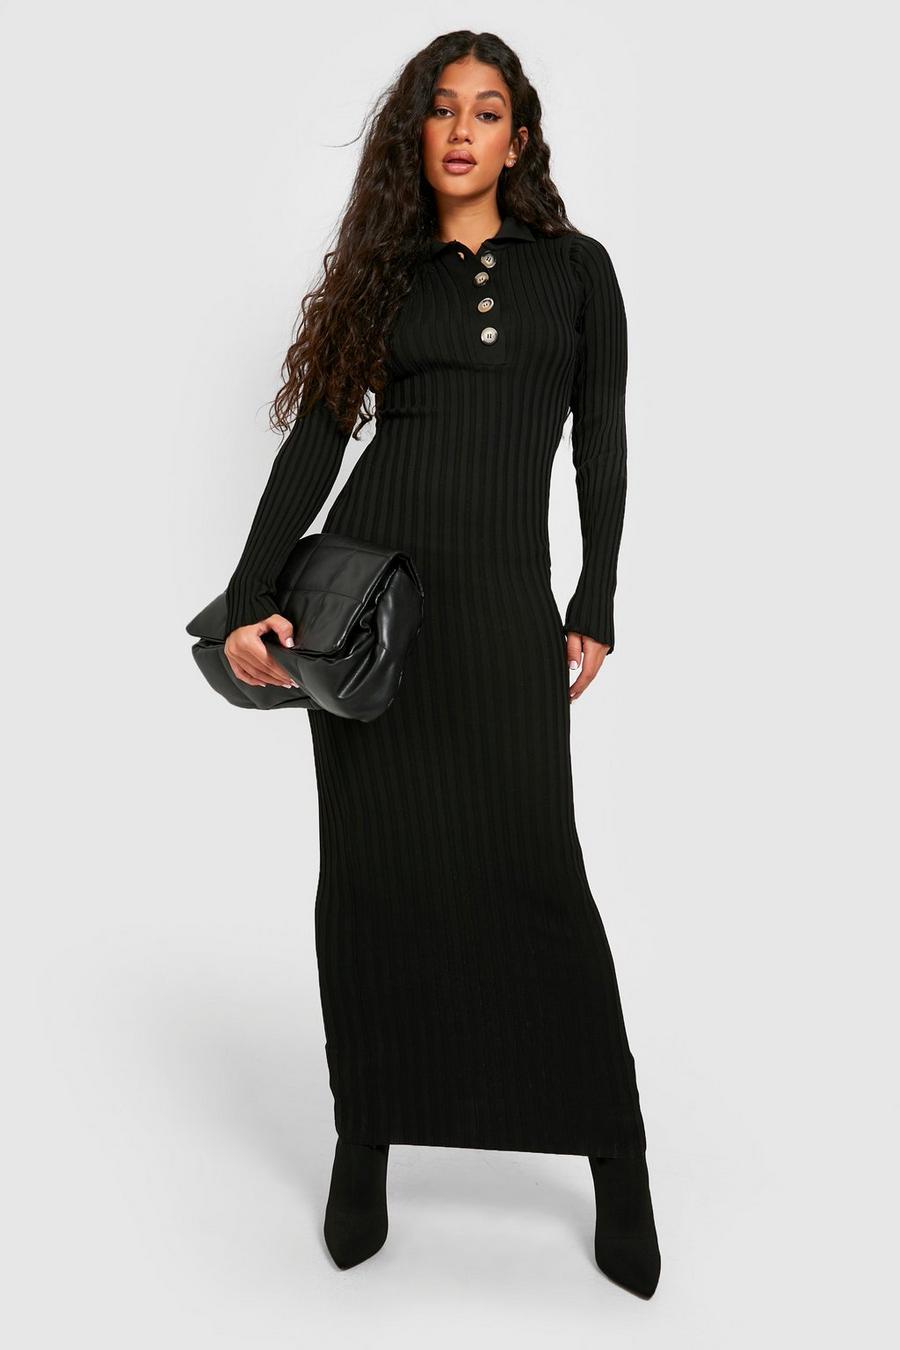 שחור nero שמלת מקסי בסריגת ריב רחבה בשני צבעים